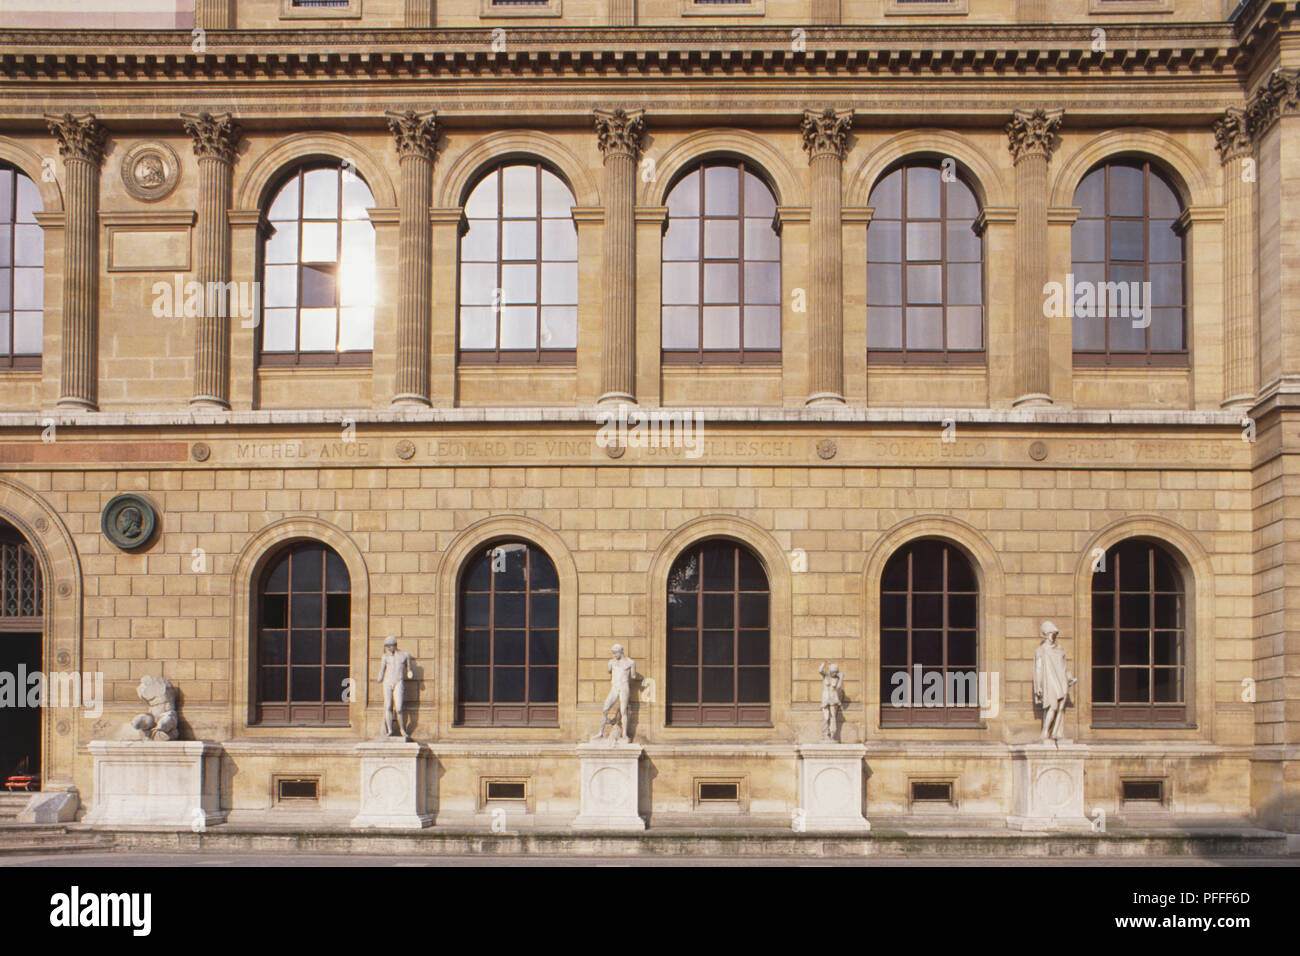 Frankreich, Paris, St.-Germain-des-Pres, Ecole Nationale Superieure des Beaux-arts, Fassade der Hochschule mit Bogenfenstern und Statuen. Stockfoto